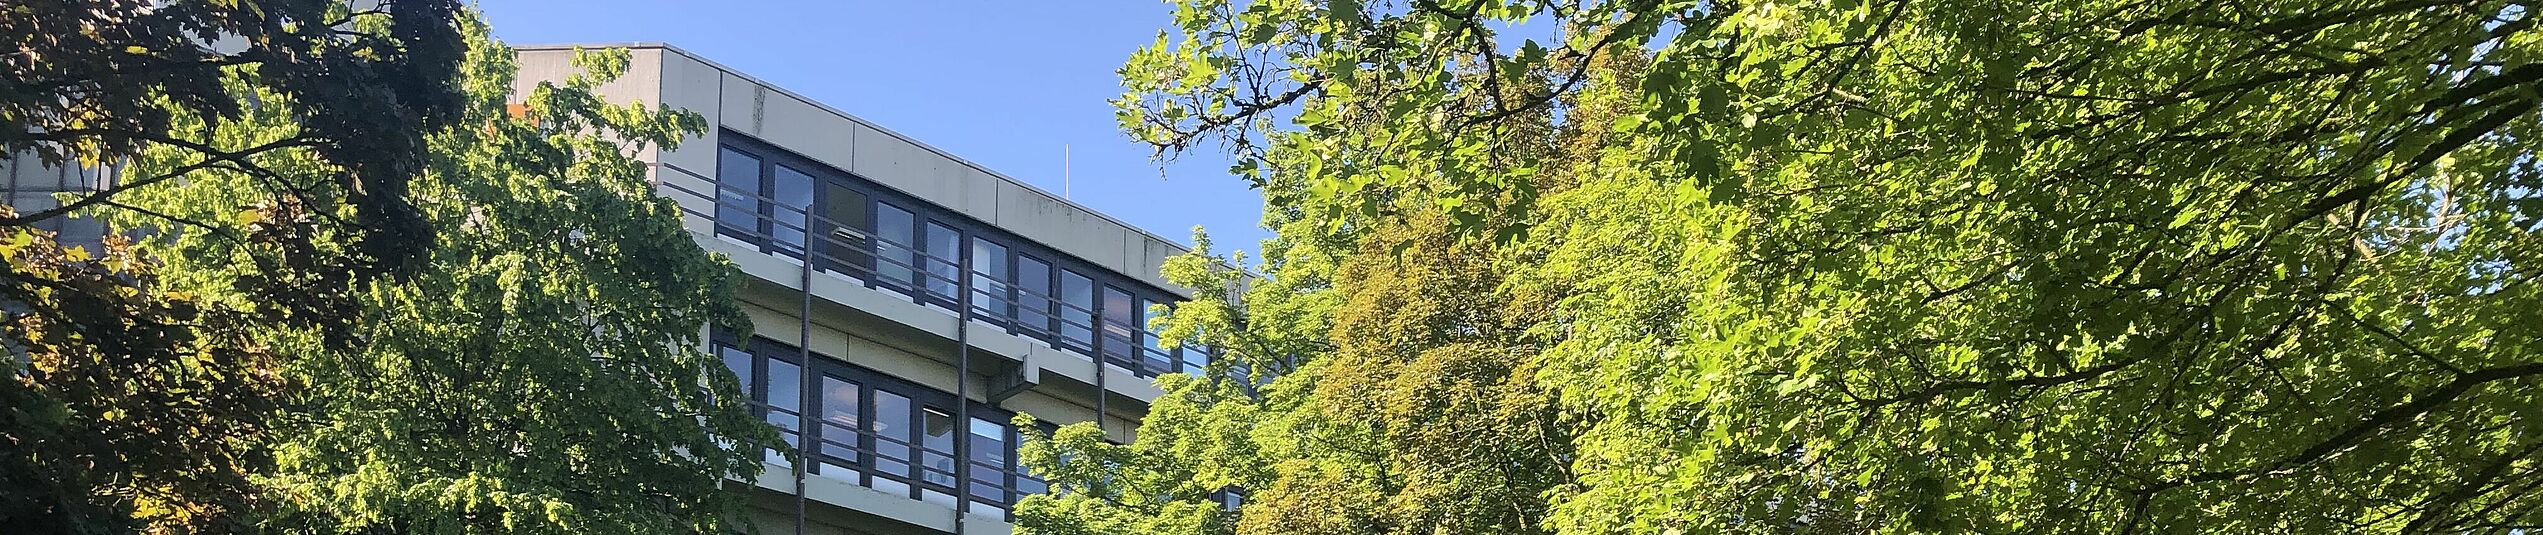 Bäume im Sommer auf dem Campus der Universität Paderborn.